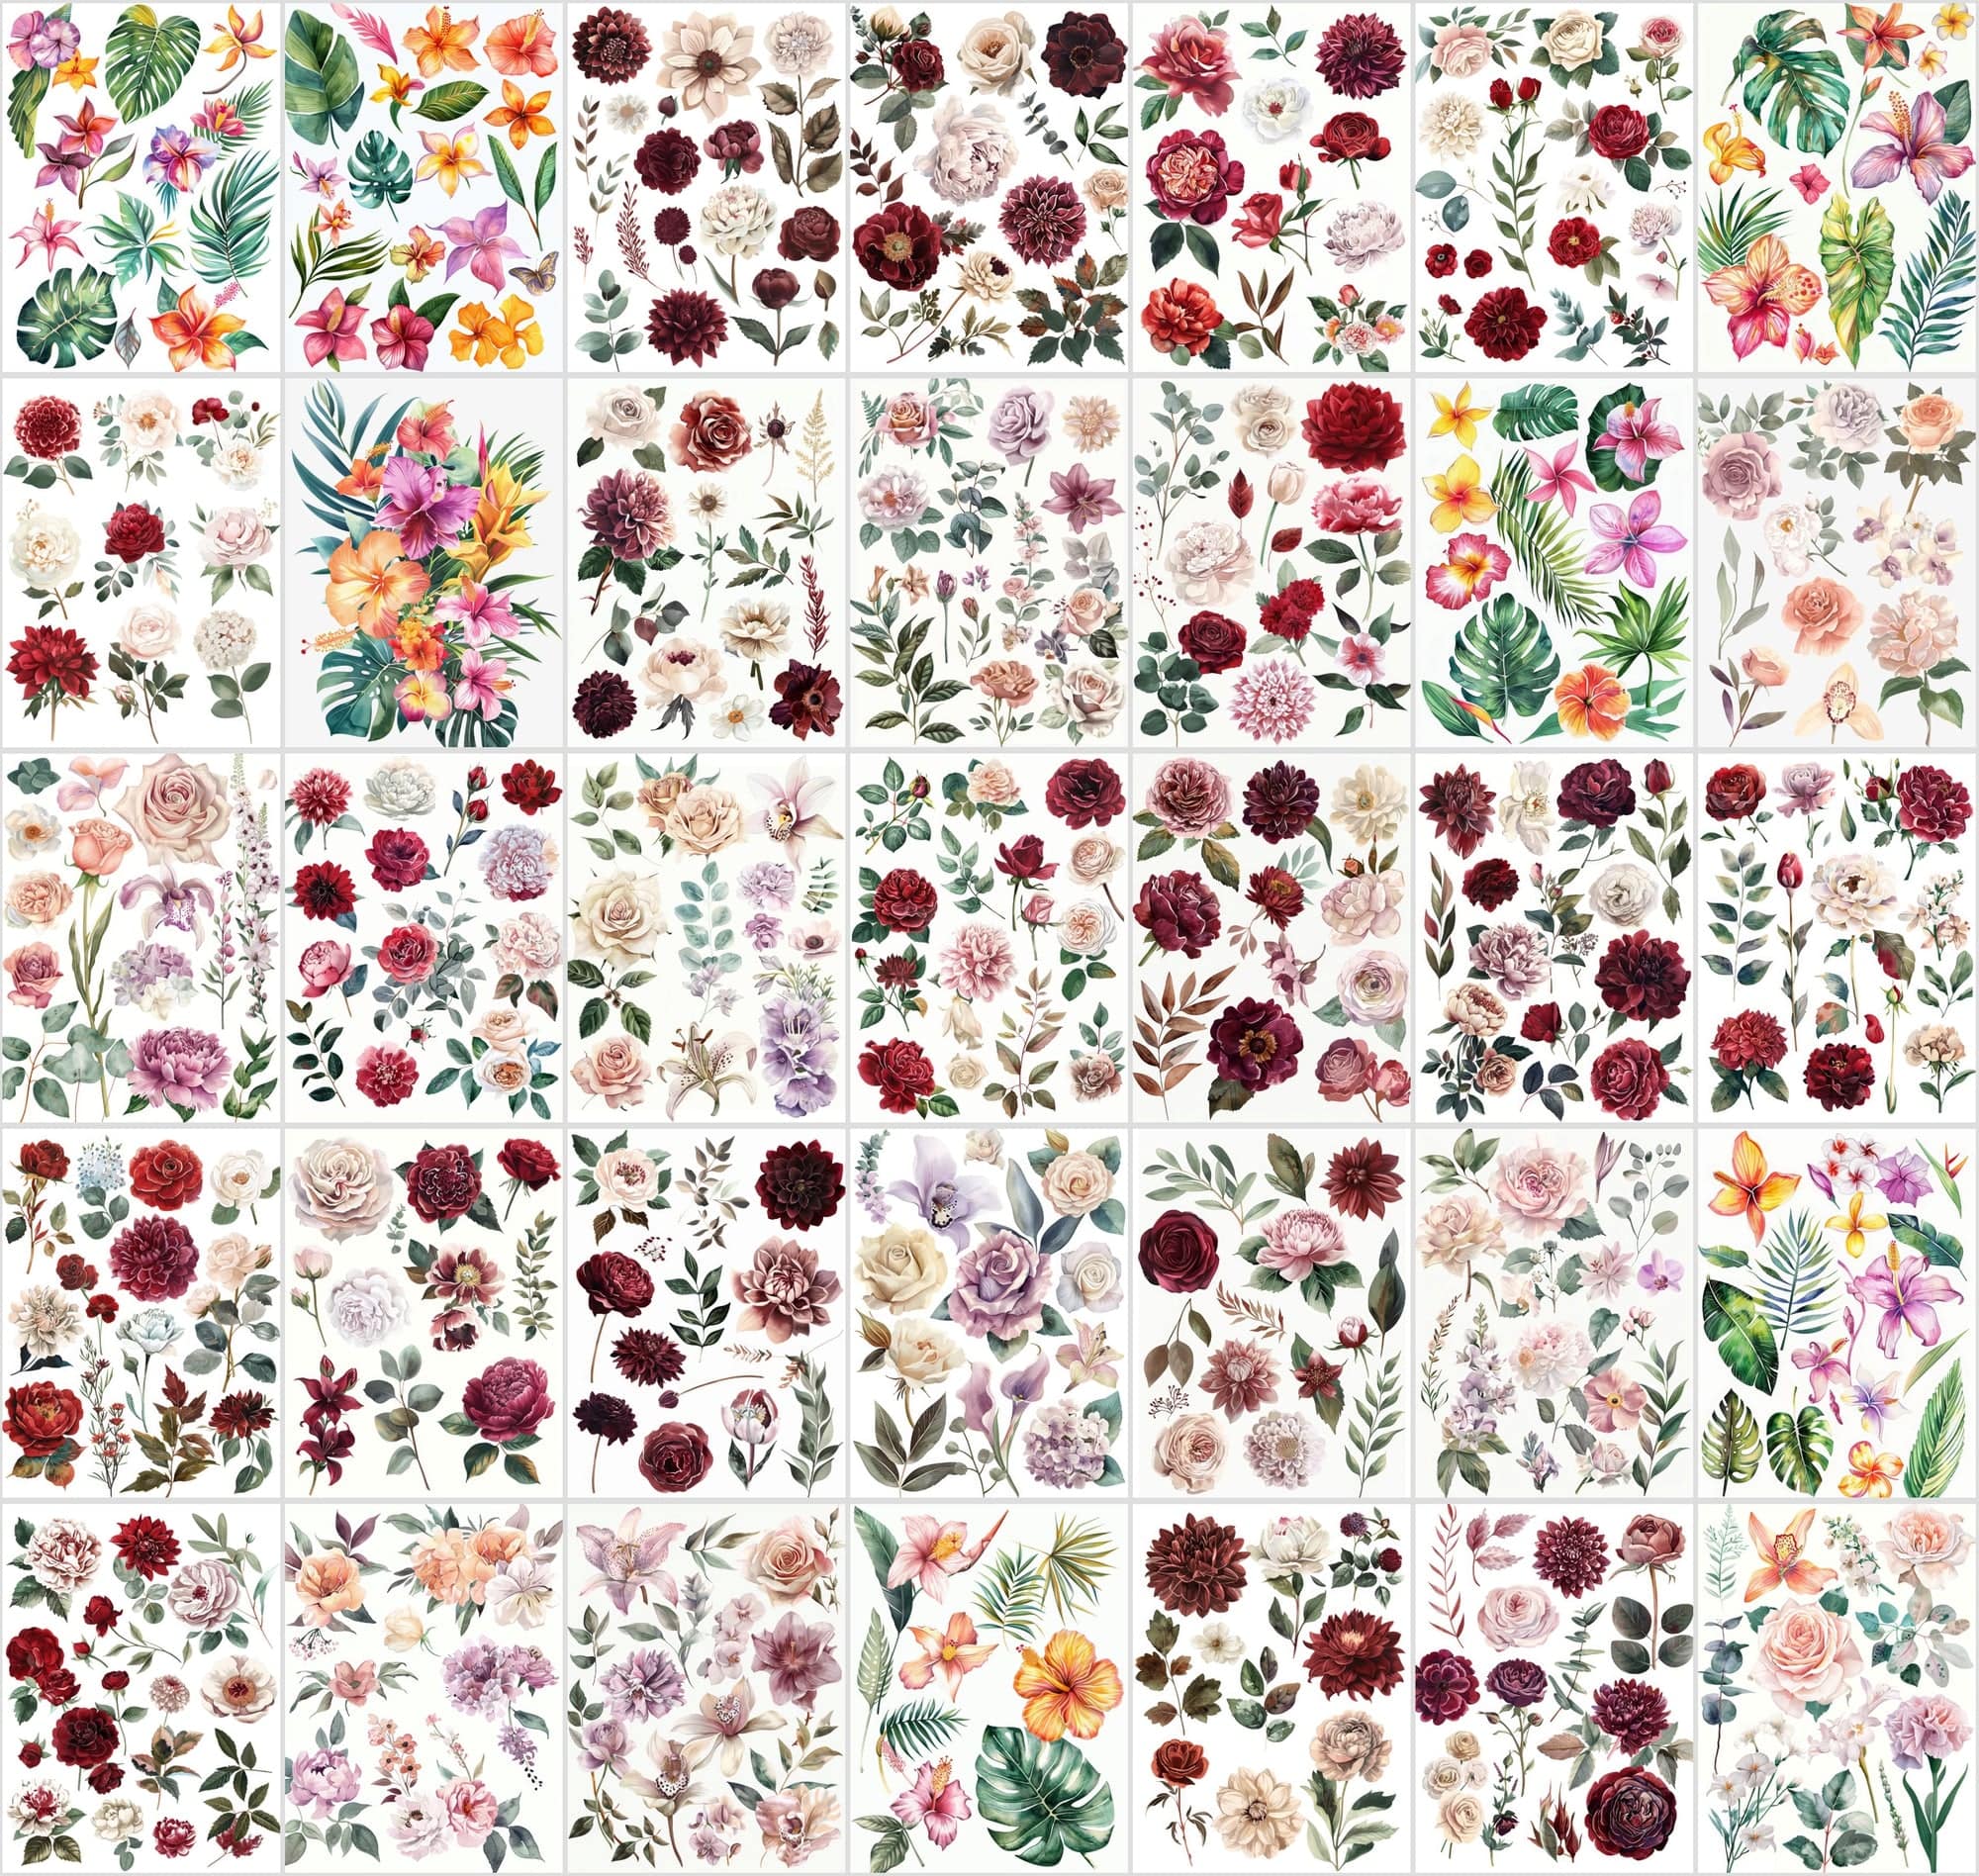 Vibrant Flower Collage Images Bundle - 420 JPG Files, High-Resolution Floral Digital Art with Commercial License Digital Download Sumobundle